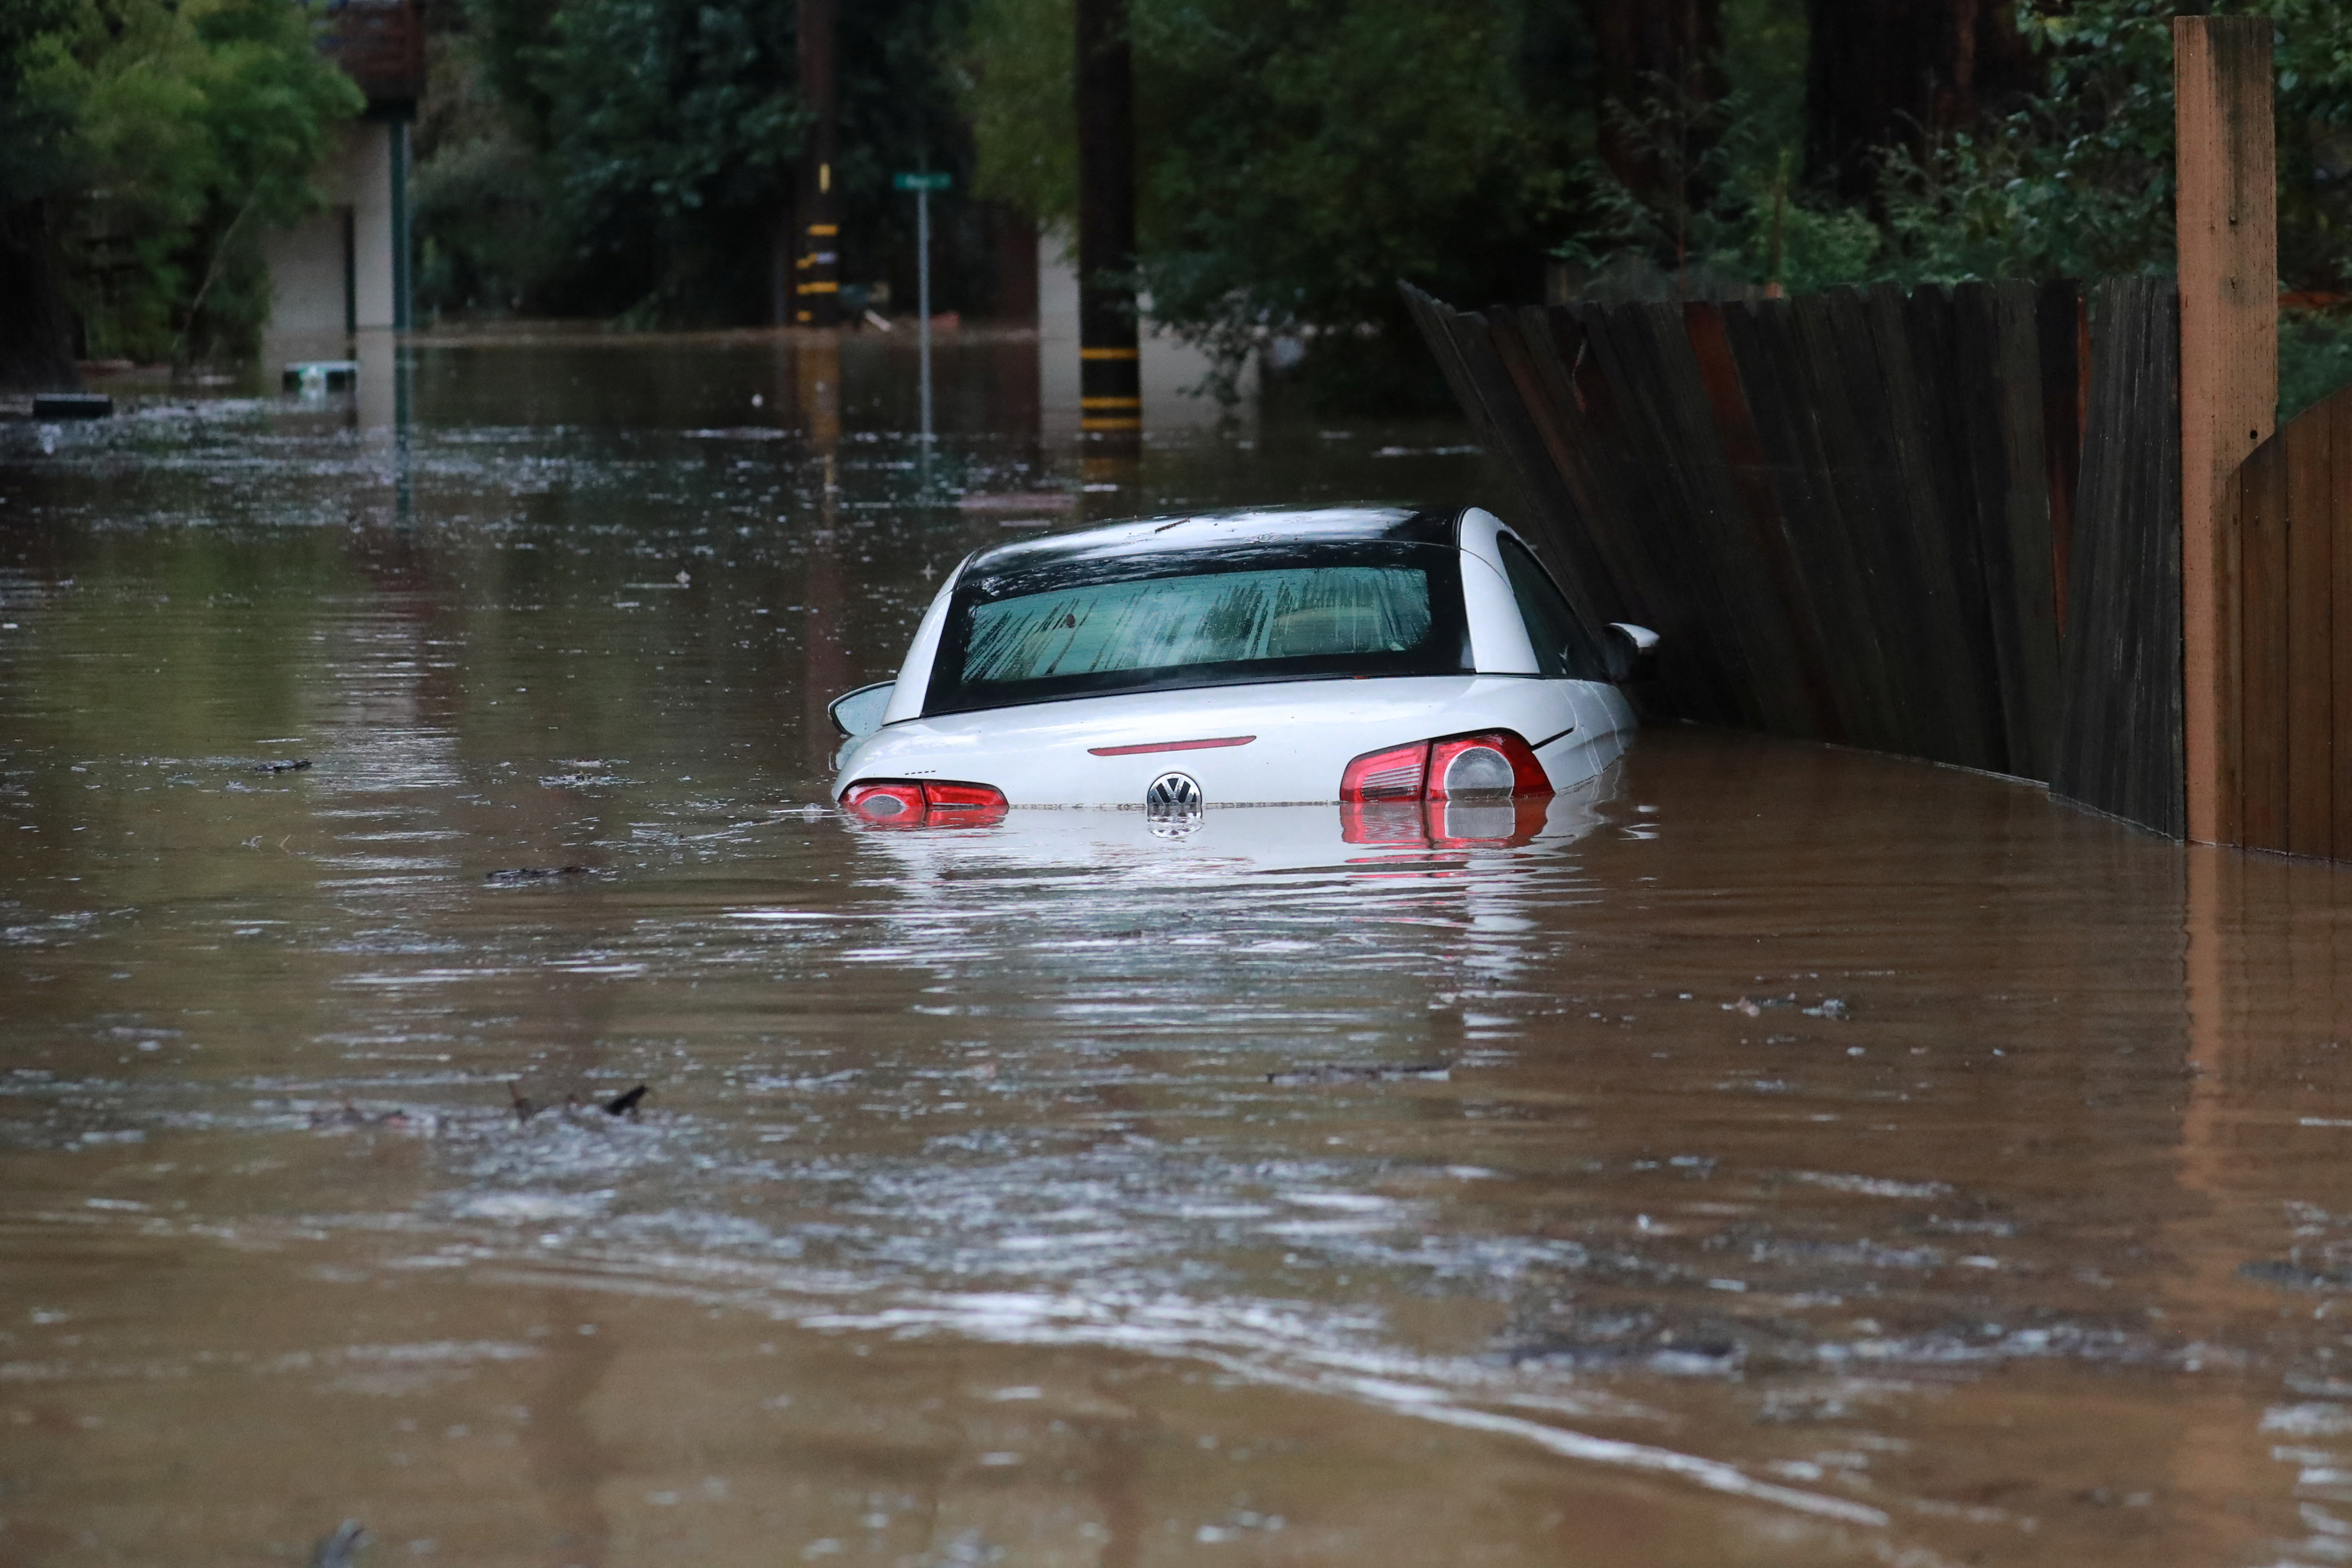 Se emitieron advertencias de inundación para la región al norte de la Bahía de San Francisco, incluyendo los condados Marin, Napa, Sonoma y Mendocino. (REUTERS)